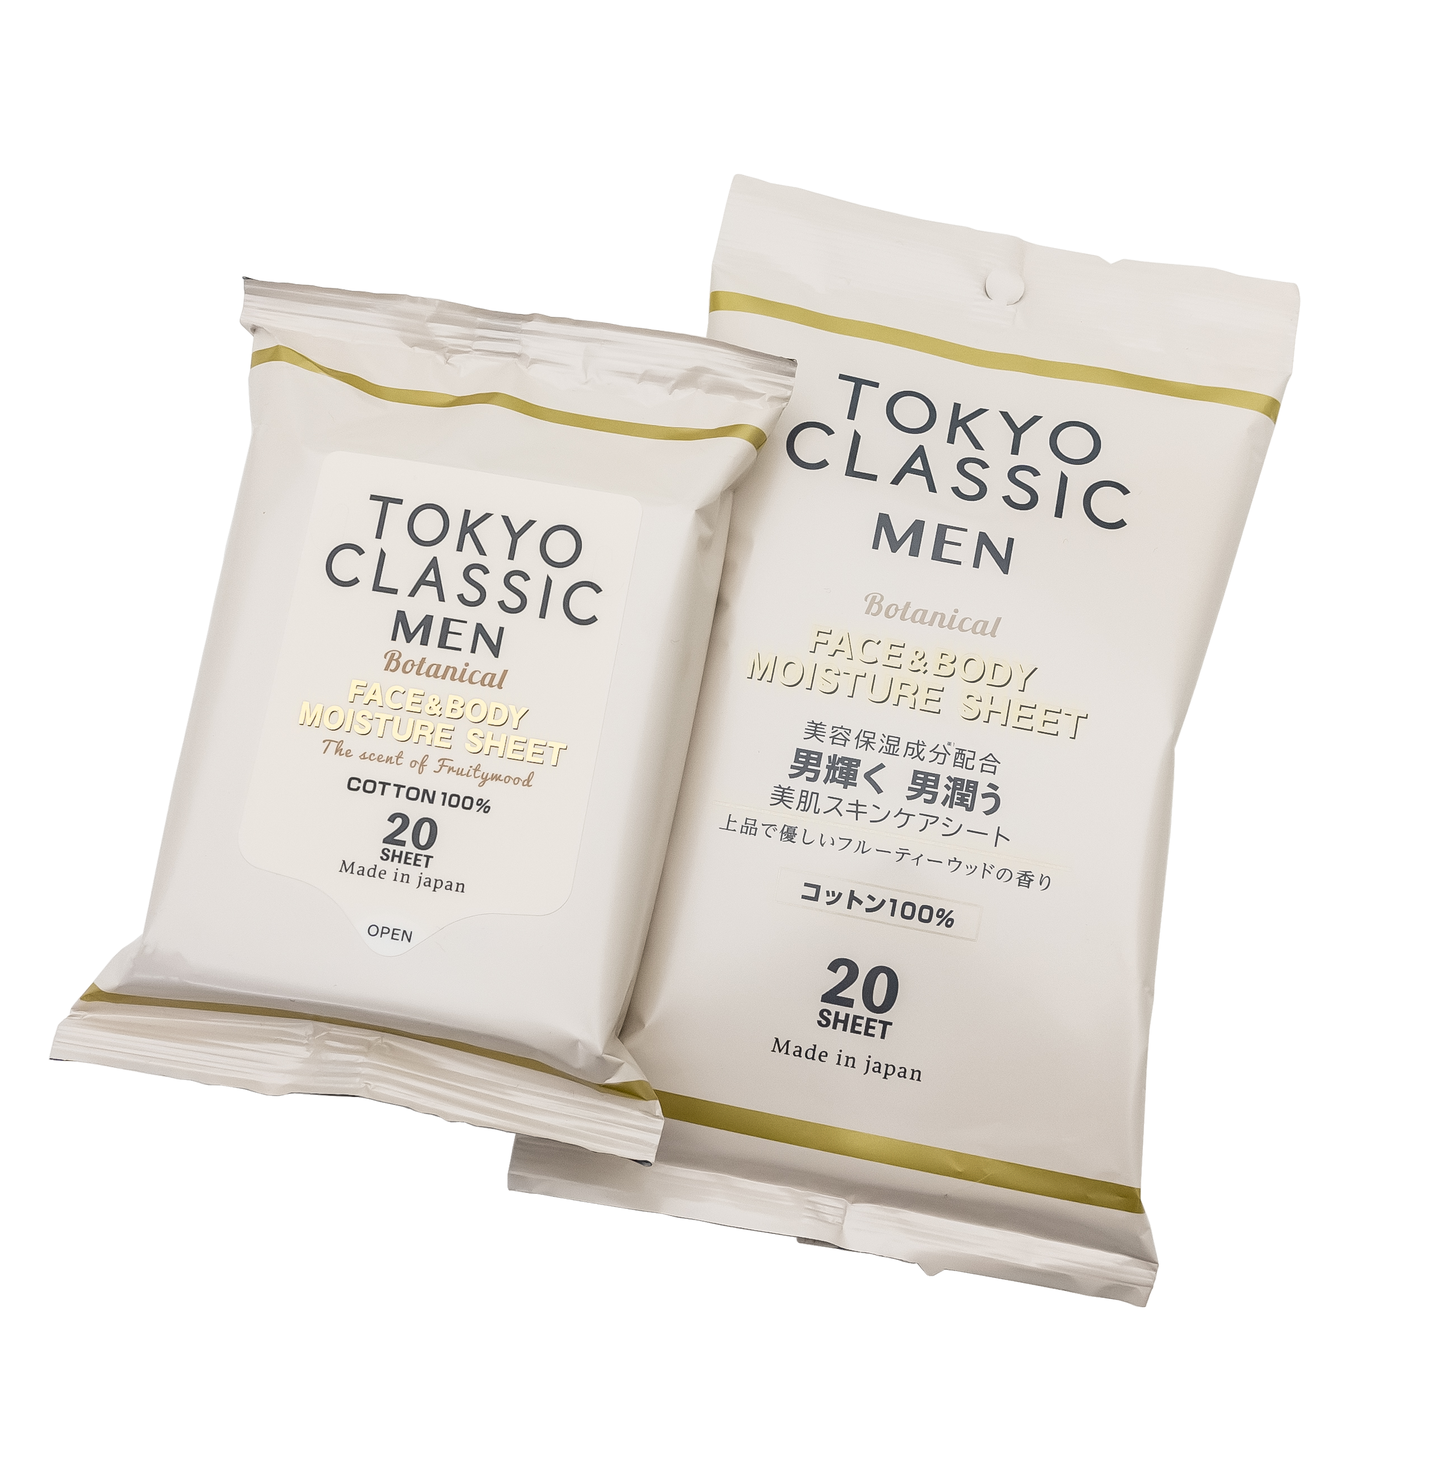 女性の要望から生まれたメンズコスメブランド Tokyo Classic Men より潤いと香りを与える保湿ケアシート新登場 株式会社サルボのプレスリリース